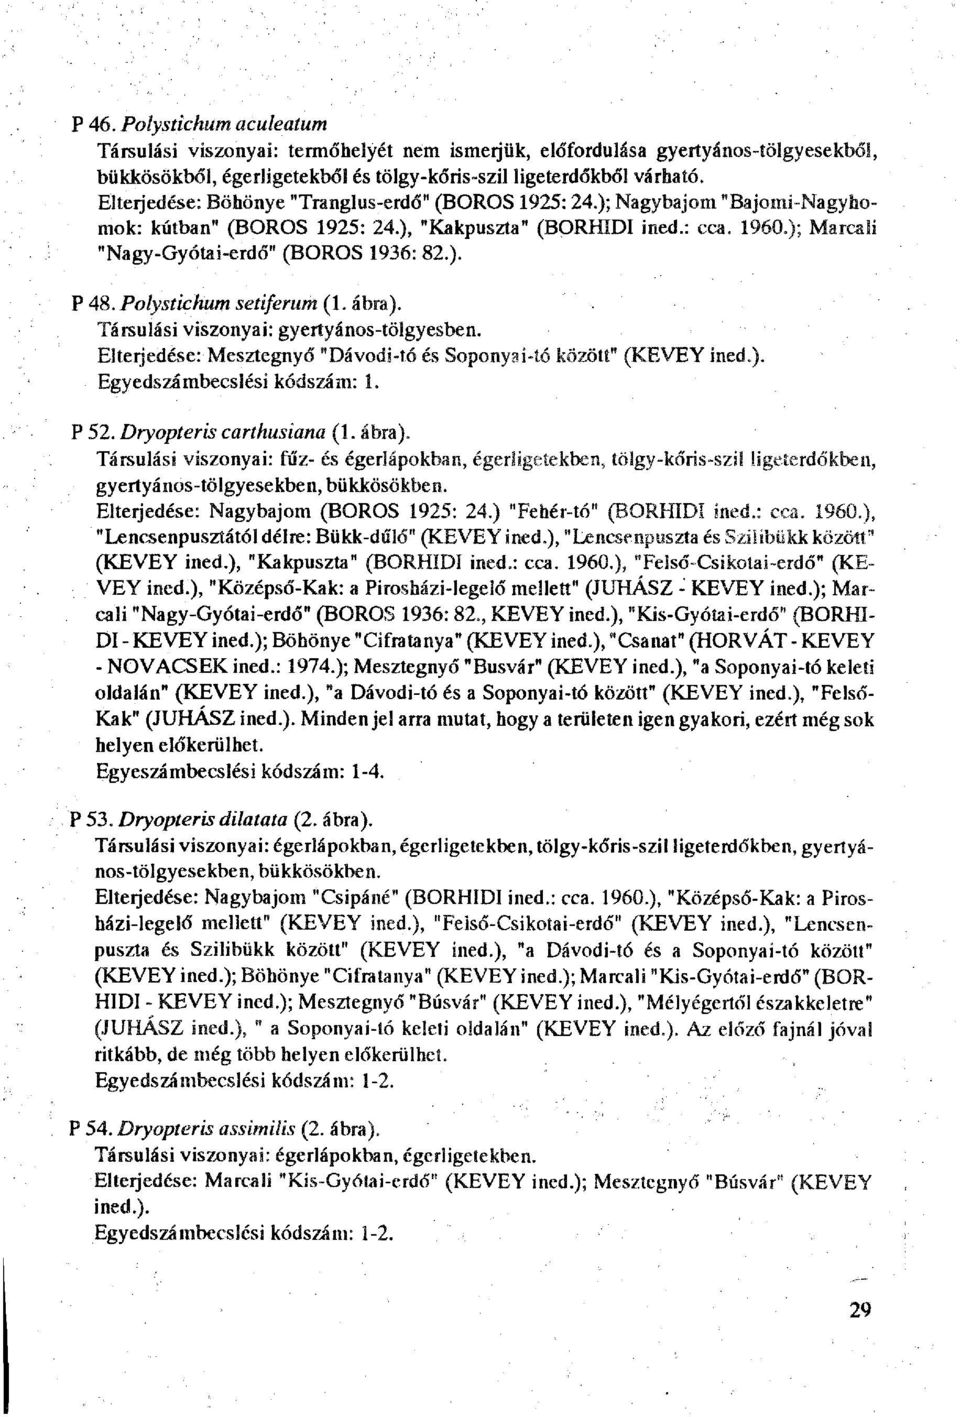 Polystichum setiferum (1. ábra). Társulási viszonyai: gyertyános-tölgyesben. Elterjedése: Mesztegnyő "Dávodi-tó és Soponyai-tó között" (KEVEY ined.). Egyedszámbecslési kódszám: 1. P 52.